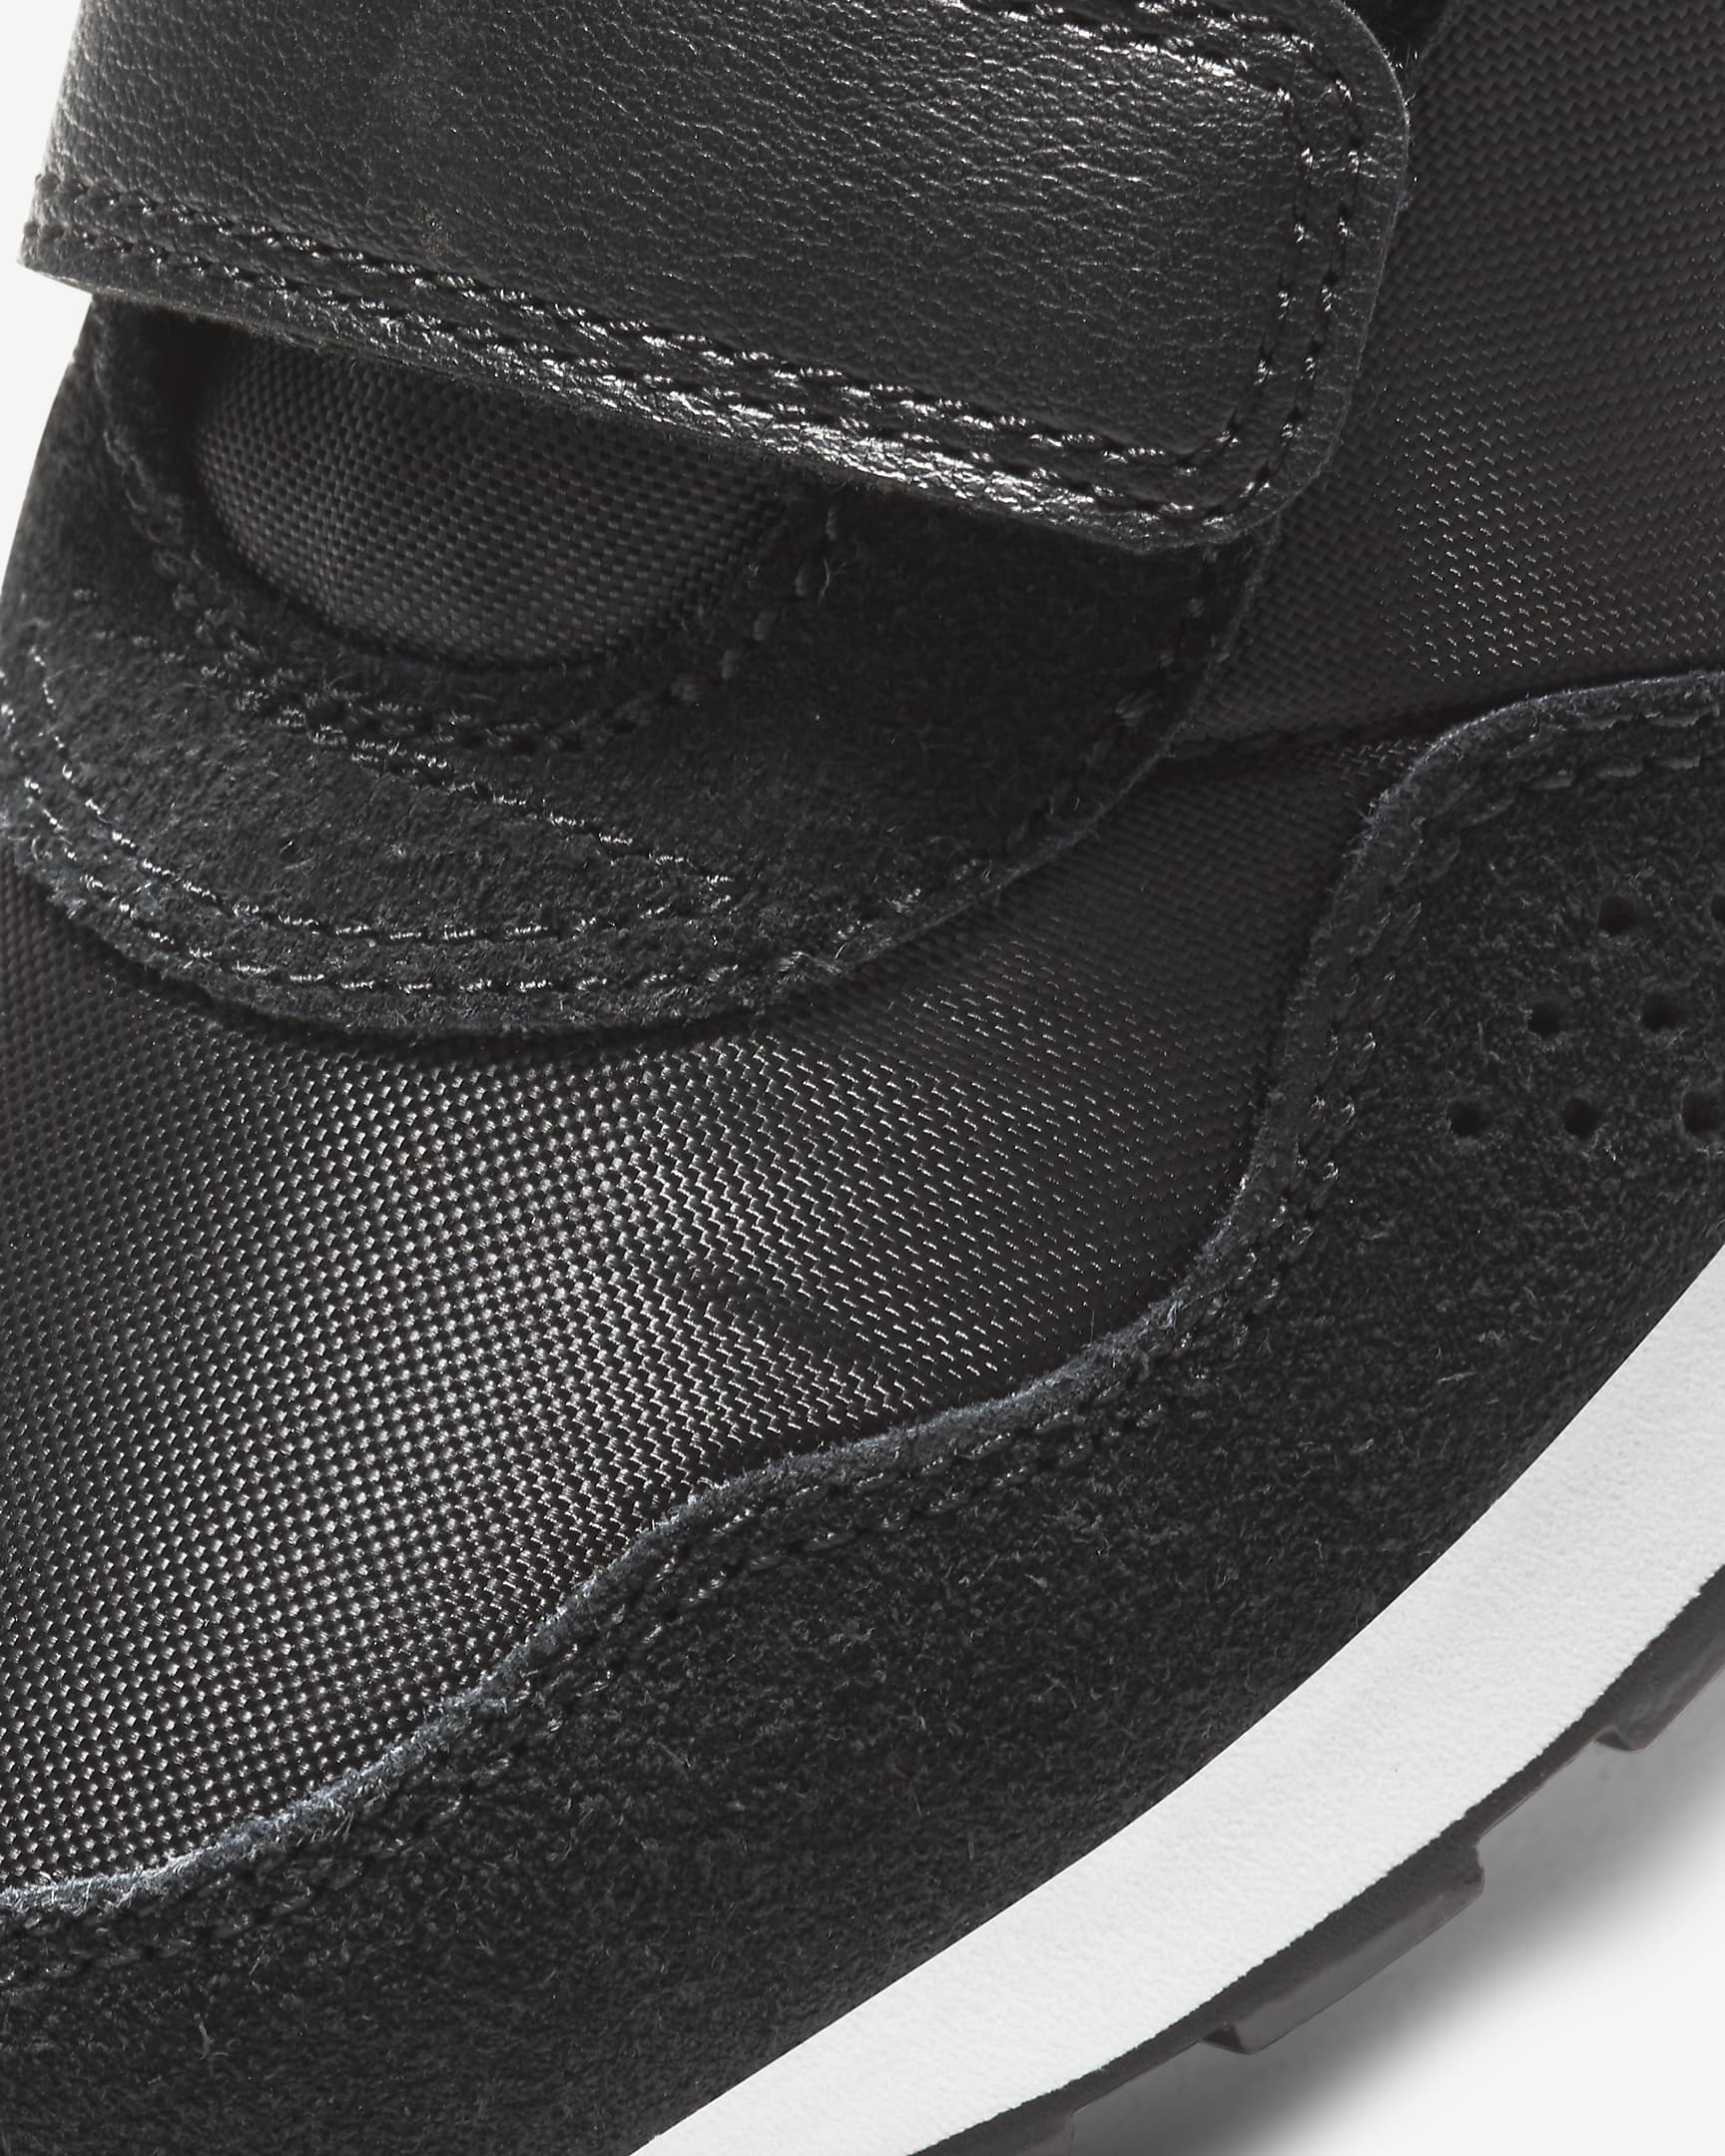 Nike MD Valiant Schuh für jüngere Kinder - Schwarz/Weiß